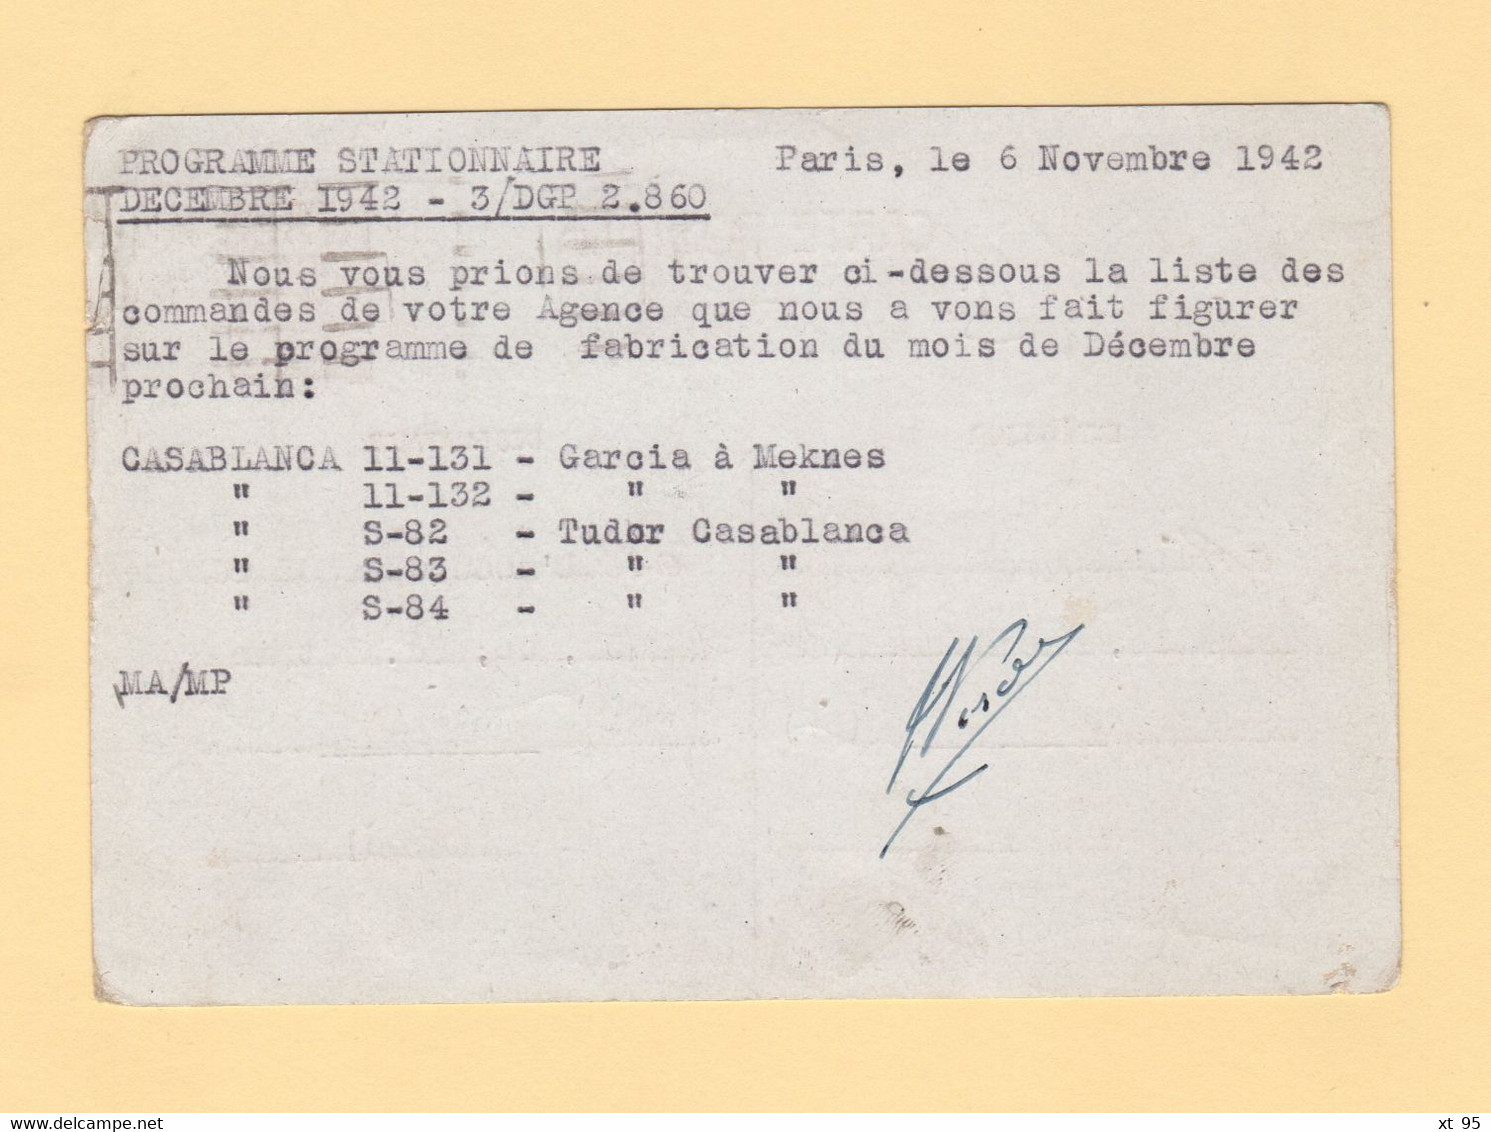 Relations Suspendues - Retour A L Envoyeur - 9 Dec 1942 - Paris Destination Maroc - Guerra Del 1939-45